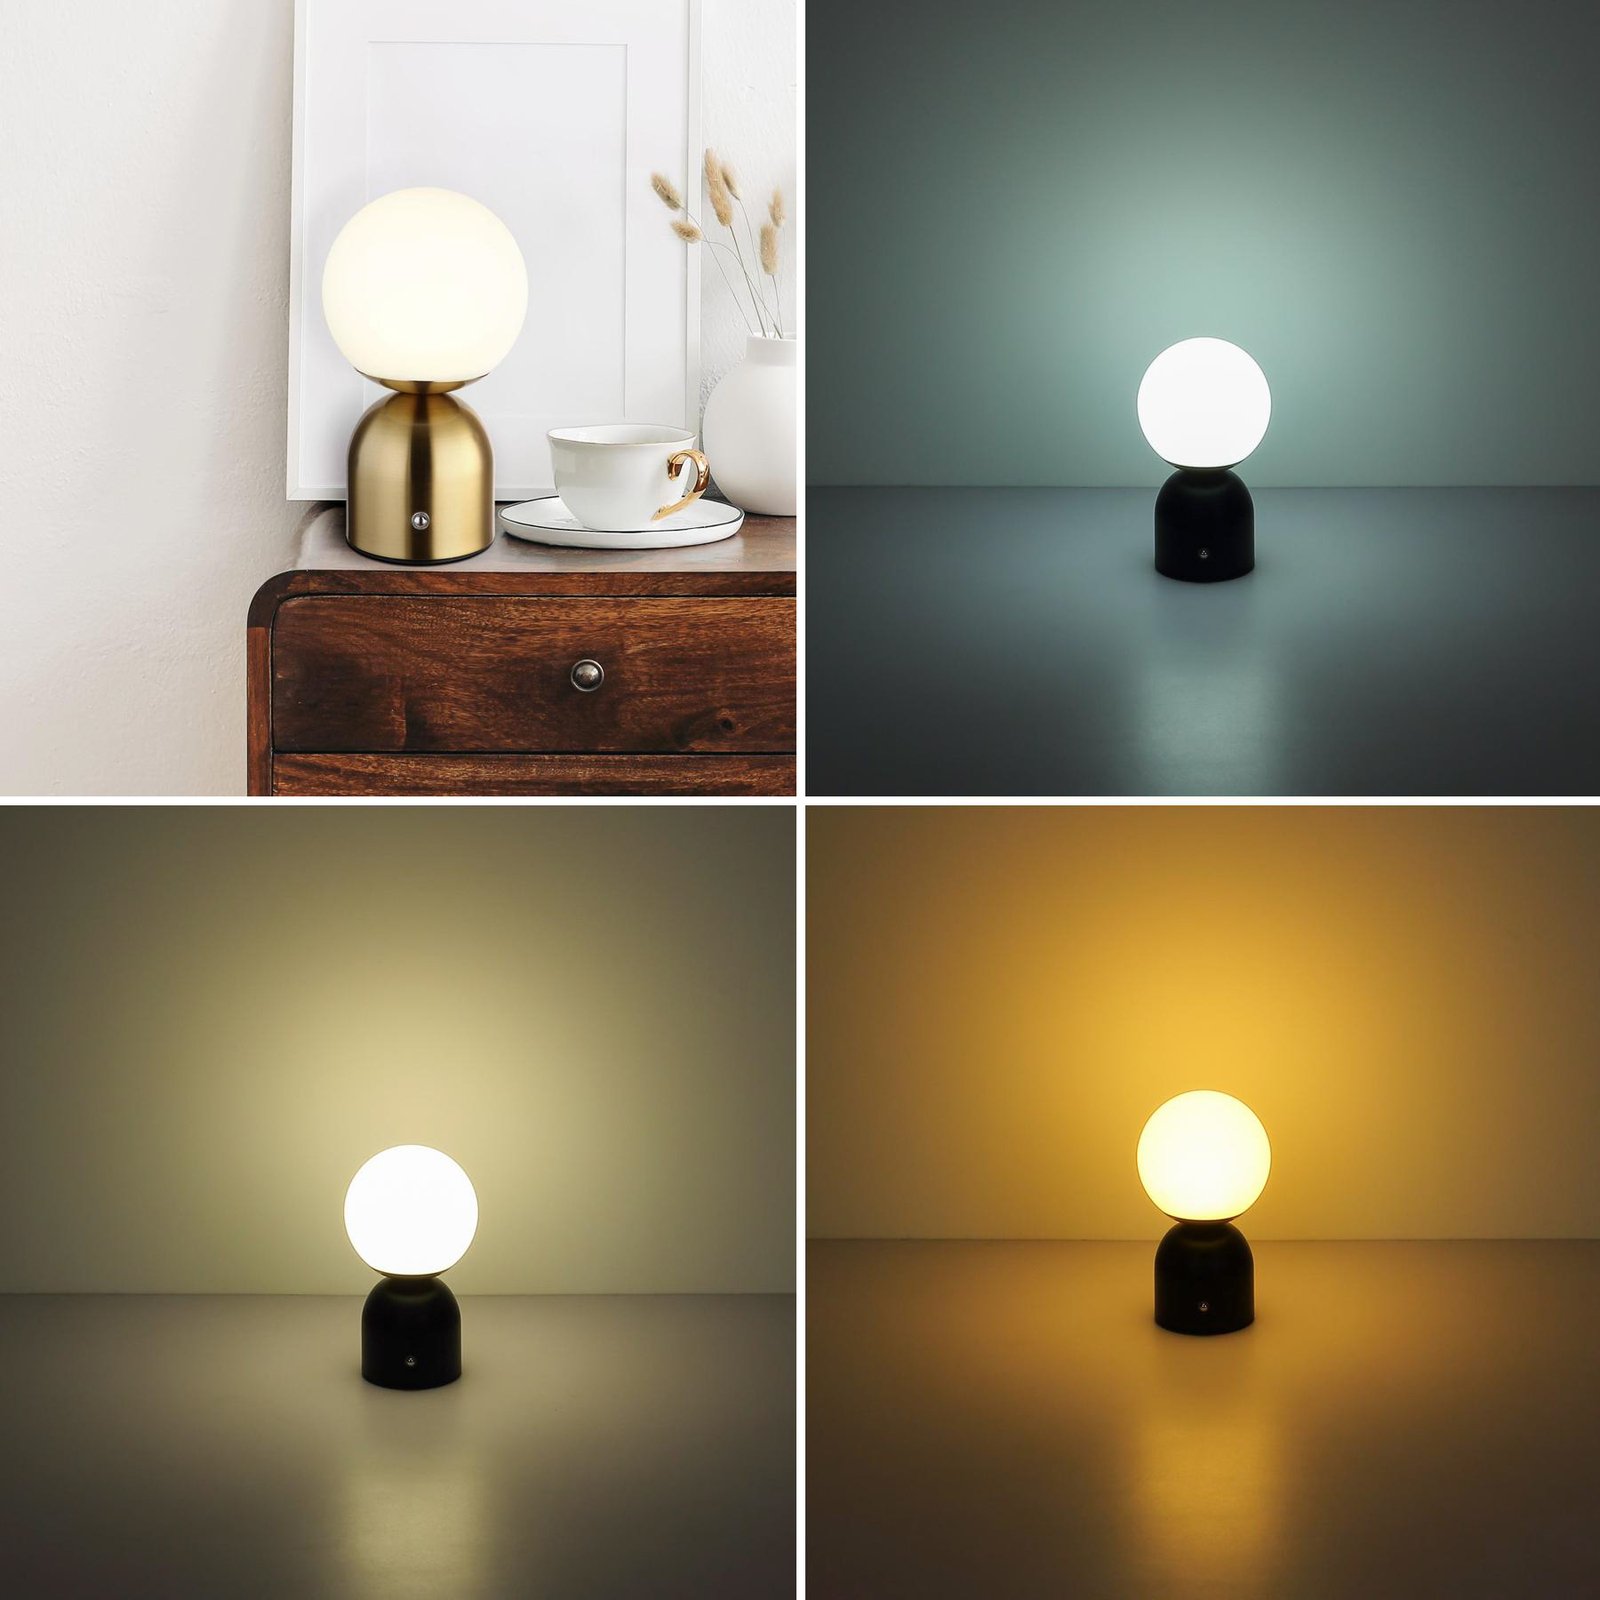 Julsy lámpara de mesa LED recargable, color latón, altura 21 cm, CCT